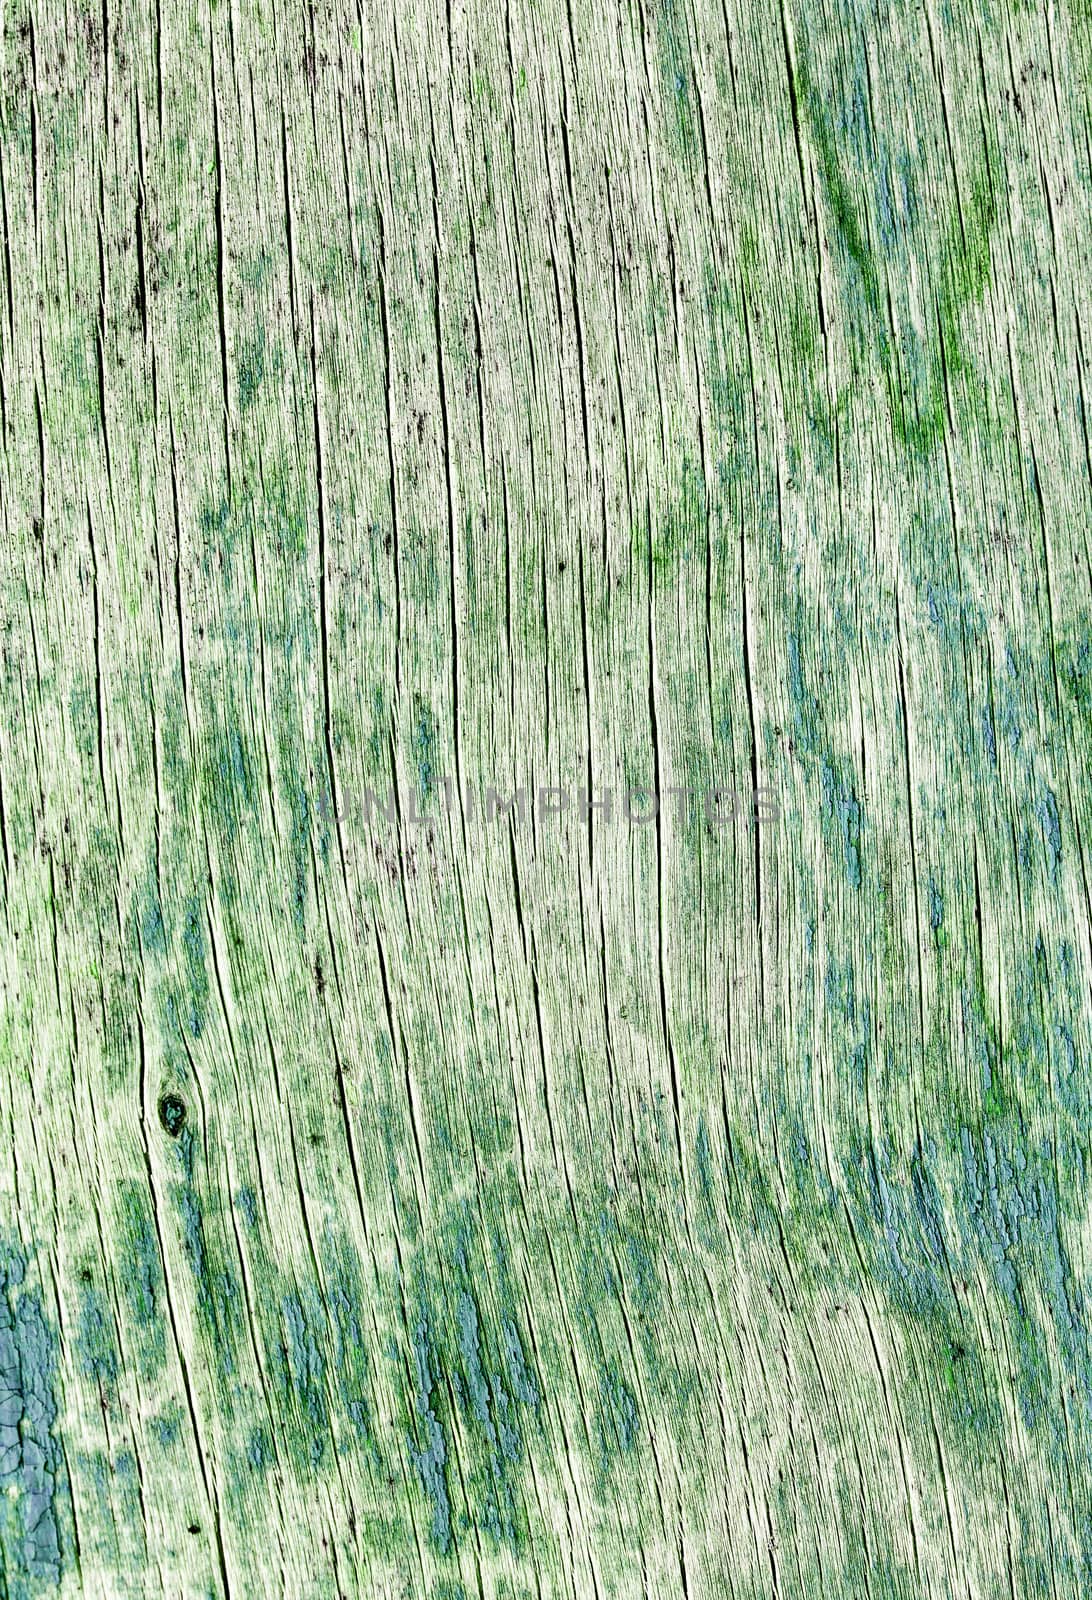 old wood board, green vintage background